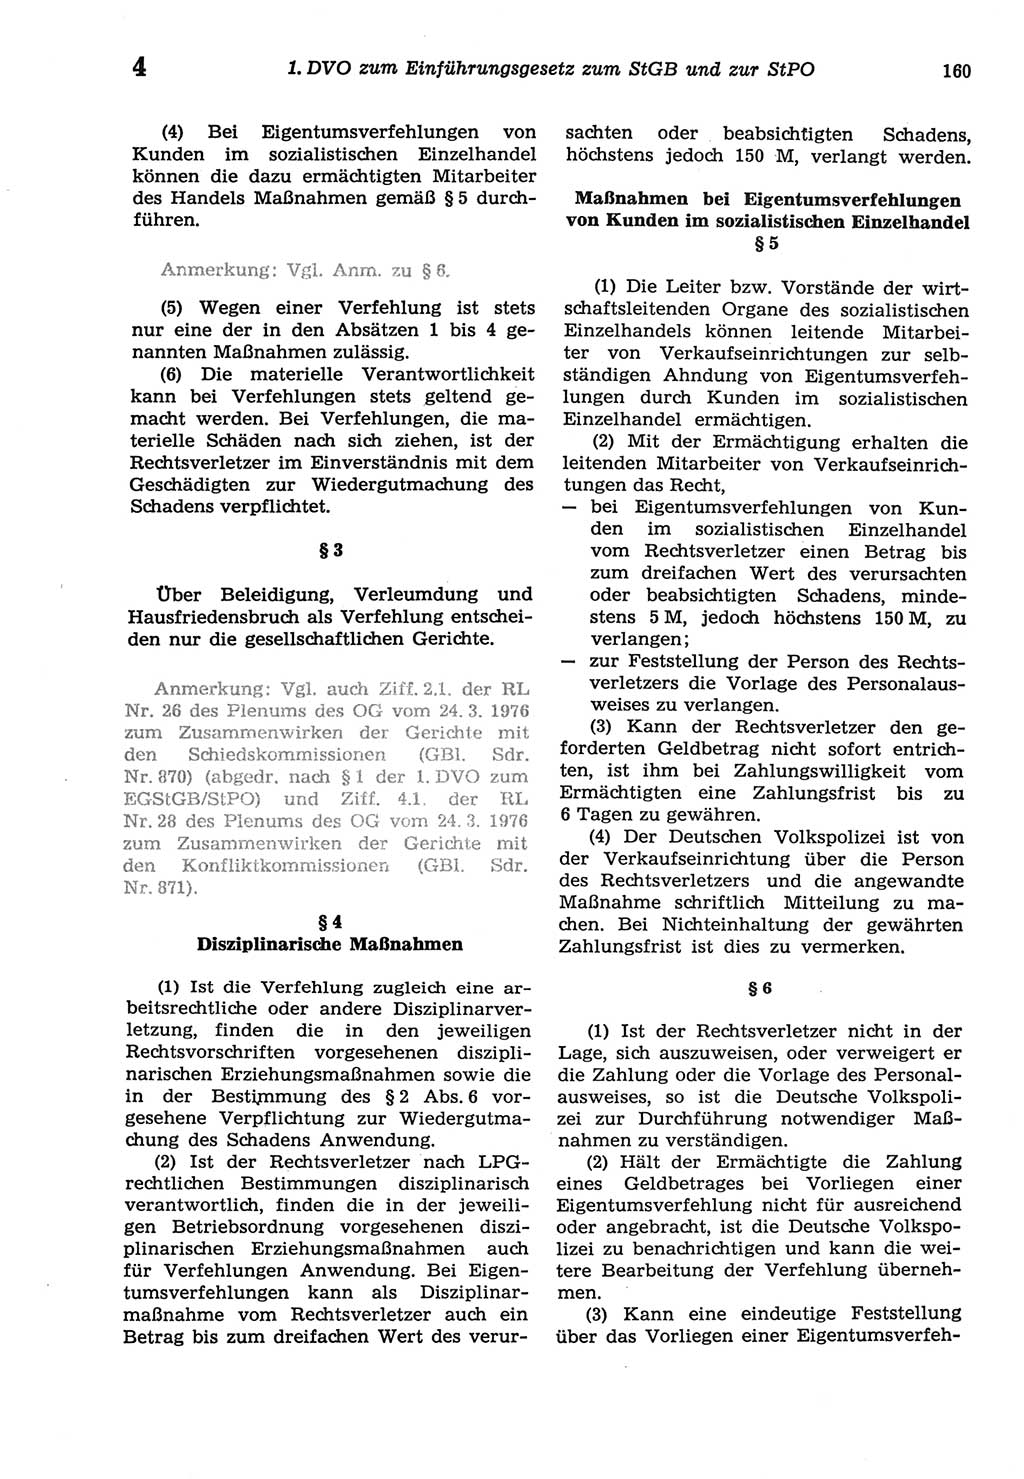 Strafprozeßordnung (StPO) der Deutschen Demokratischen Republik (DDR) sowie angrenzende Gesetze und Bestimmungen 1977, Seite 160 (StPO DDR Ges. Best. 1977, S. 160)